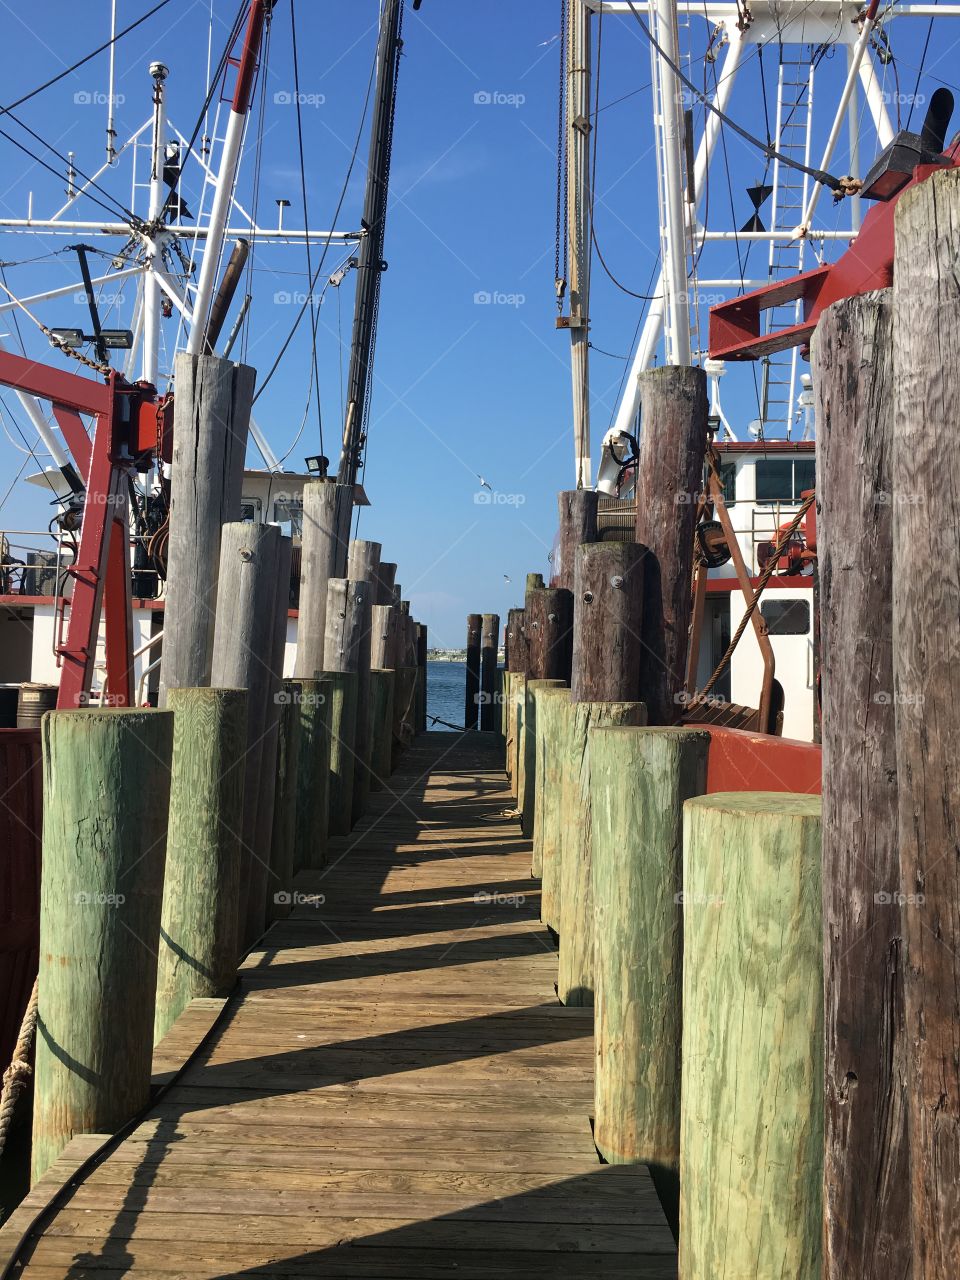 Fishing docks 